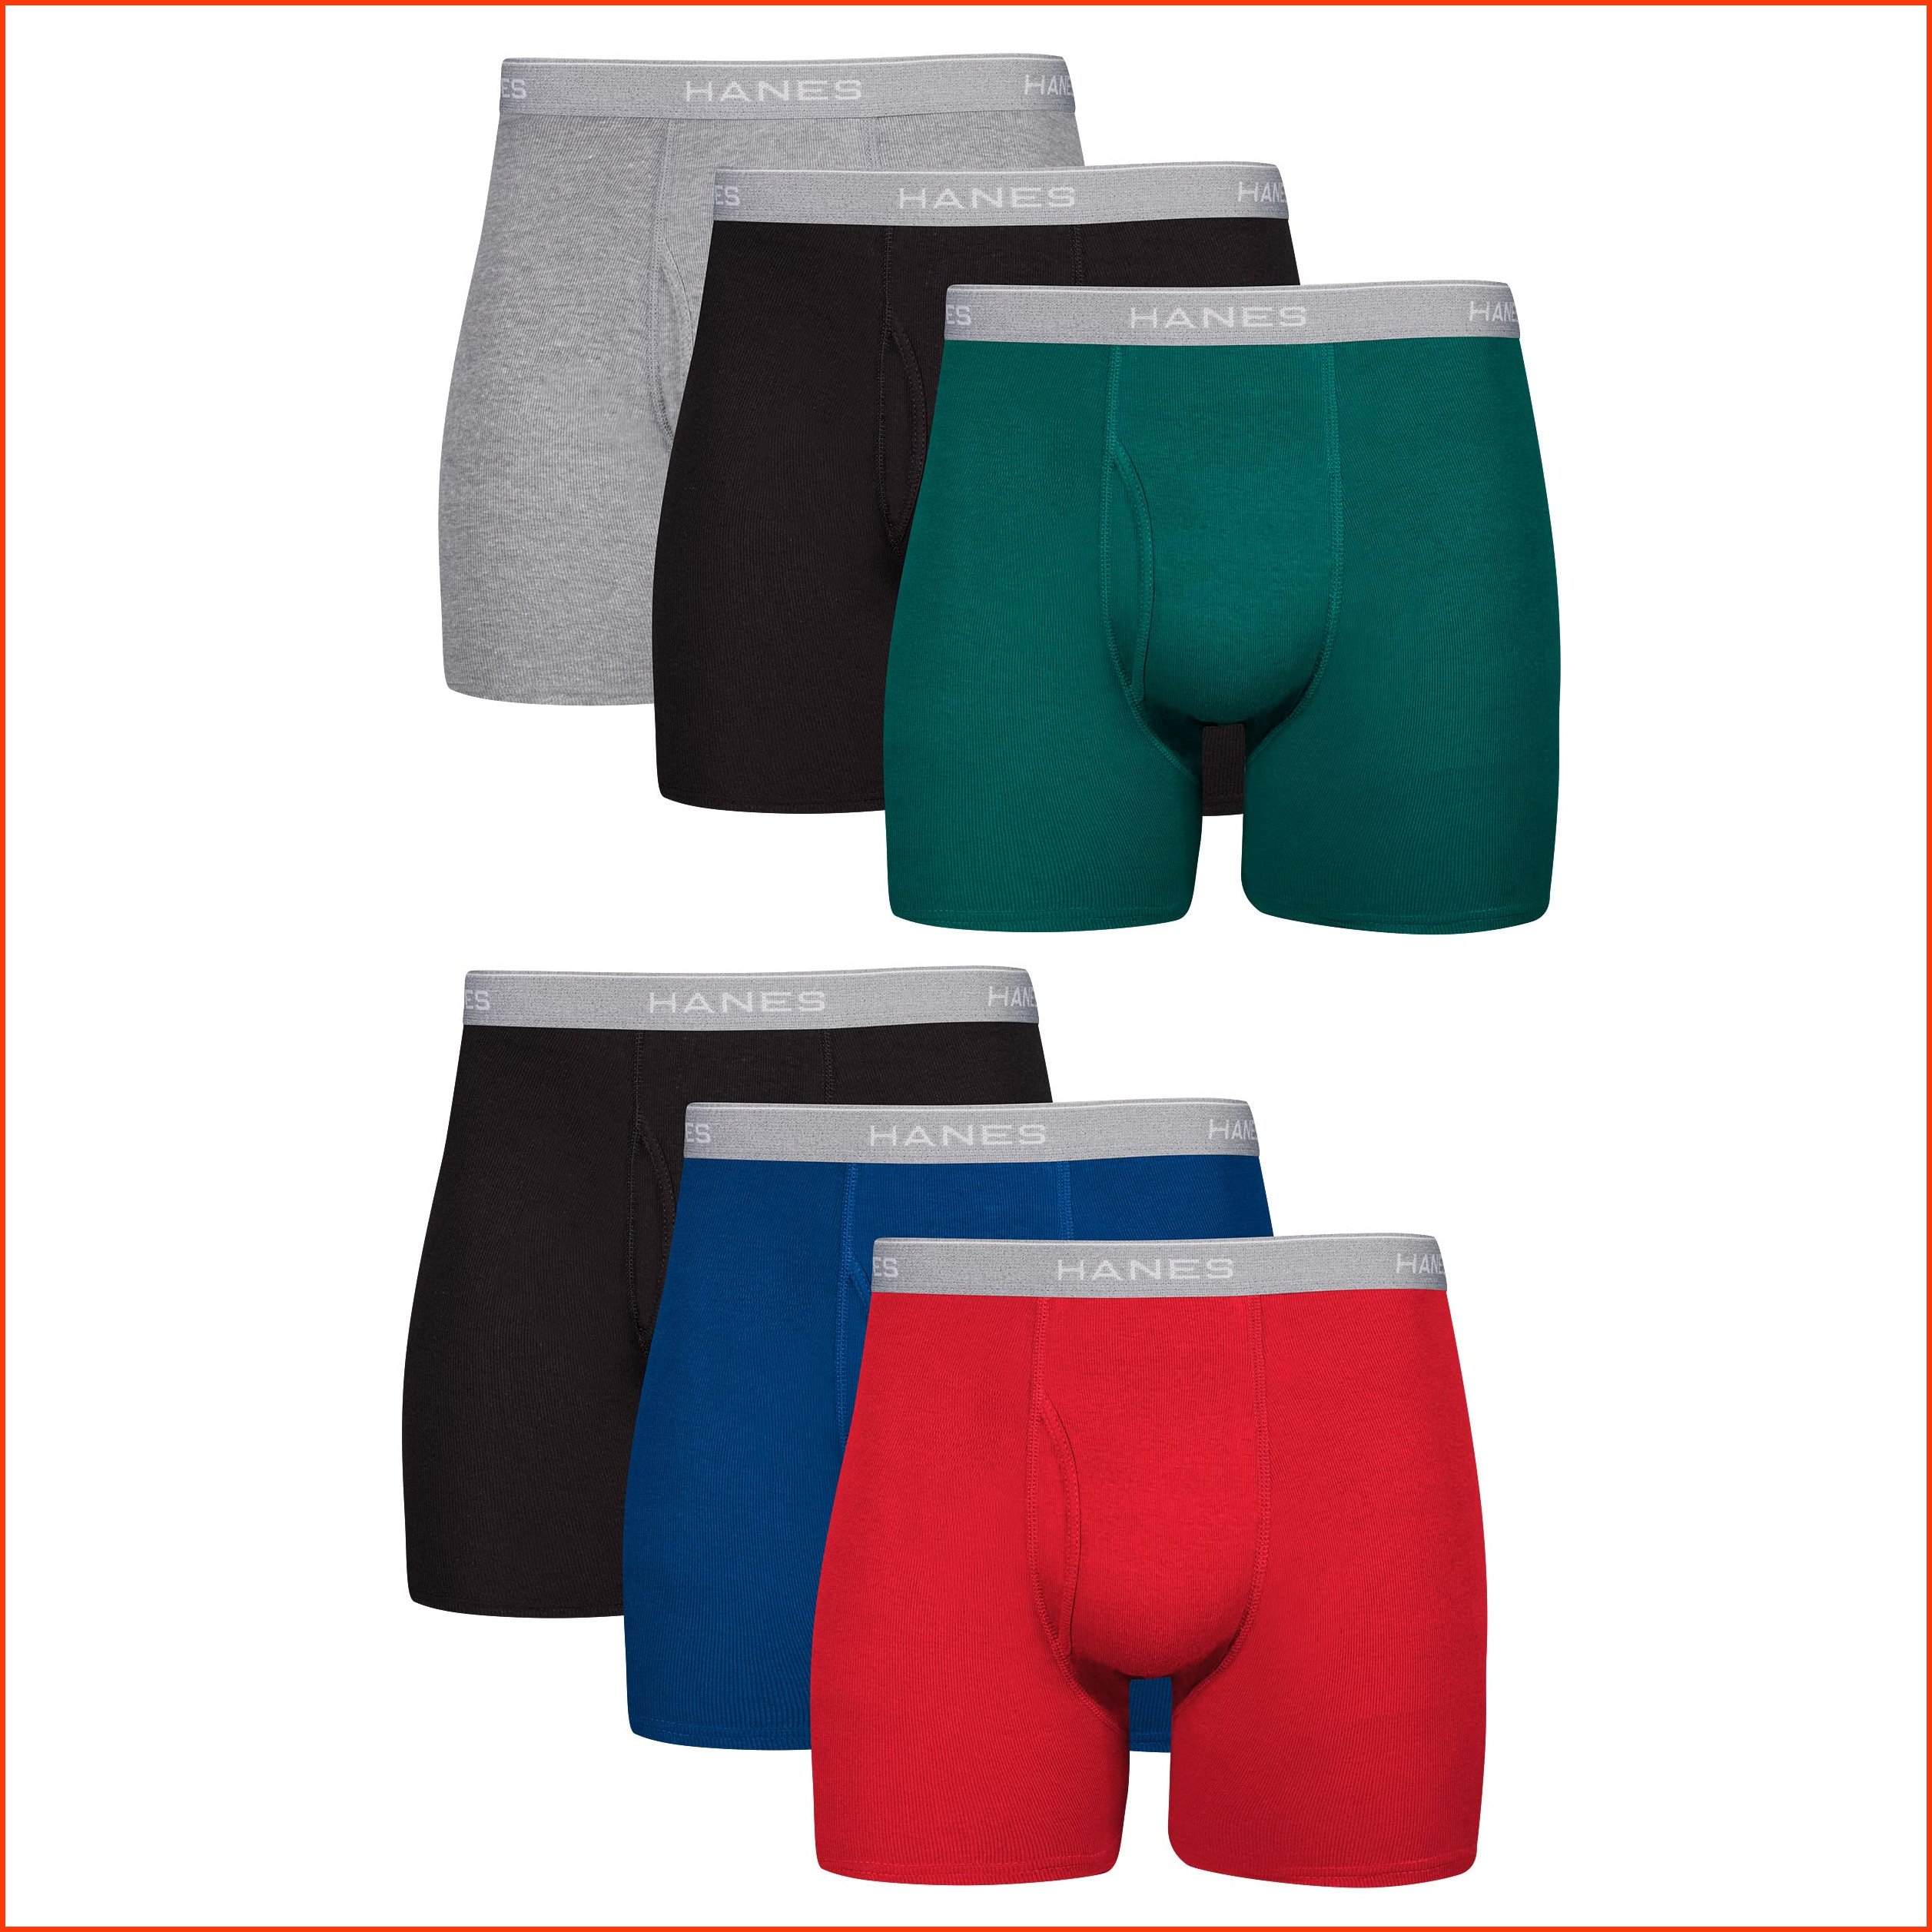 並行輸入品Hanes Men Hanes Boxer Briefs Cool Dri Moisture-Wicking Underwear Cotton No-Ride-up for Men Multi-Packs Avai